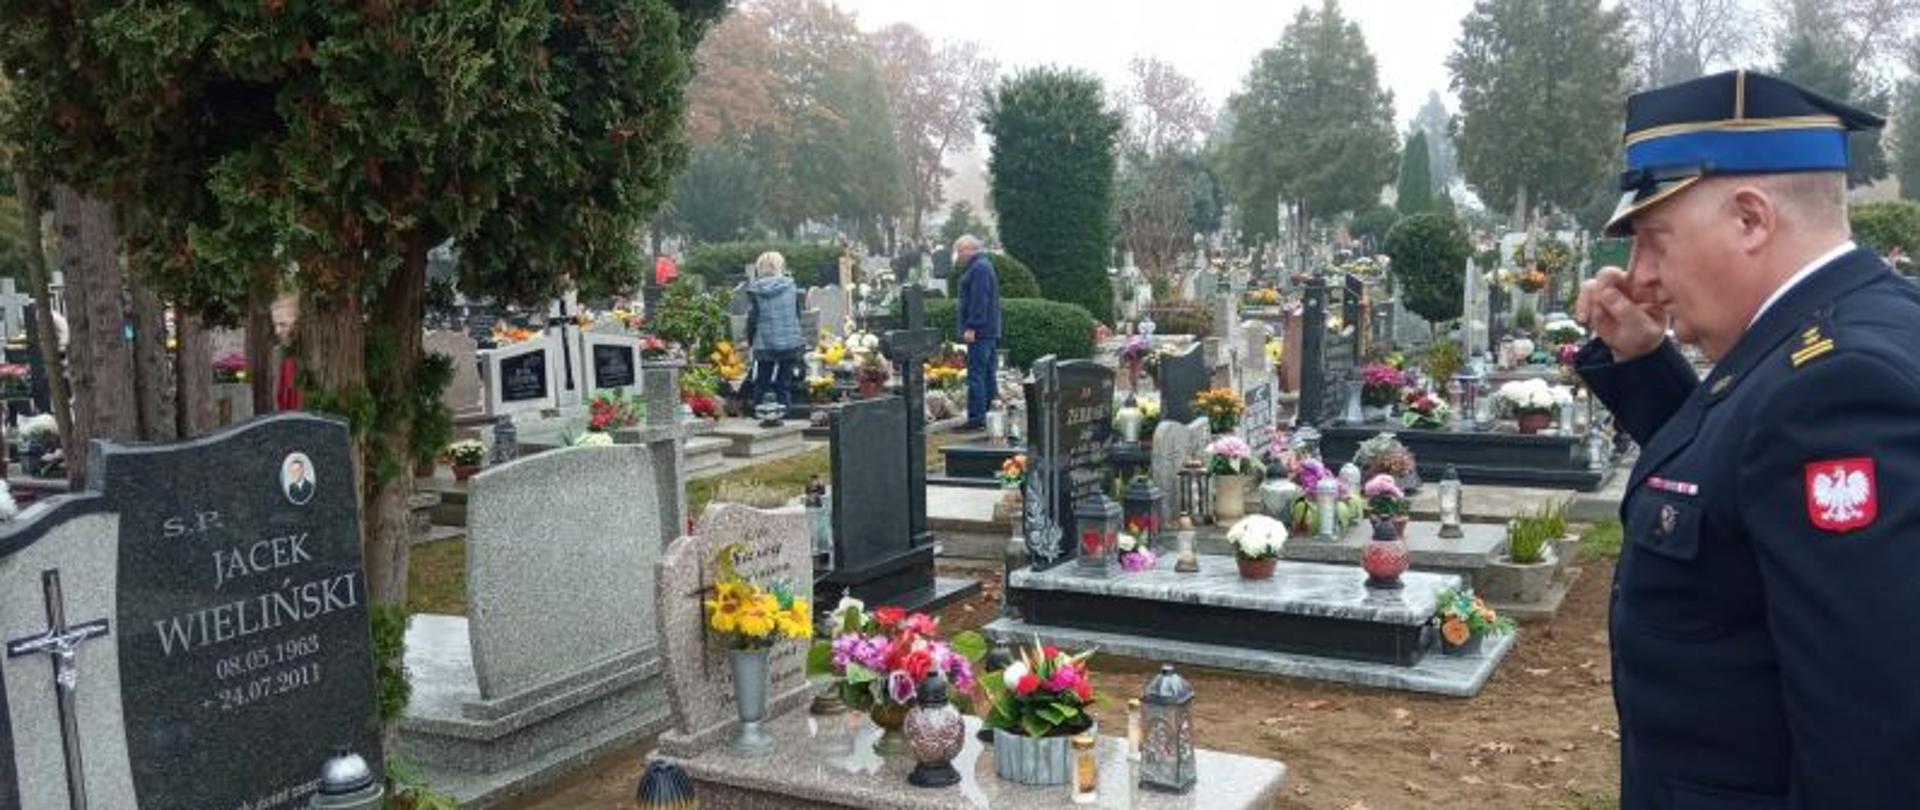 Zdjęcie wykonane na cmentarzu. Po lewej stronie salutujący strażak w galowym mundurze z czapką. Na grobach dużo zniczy, Dzień jest pochmurny, jest szaro.